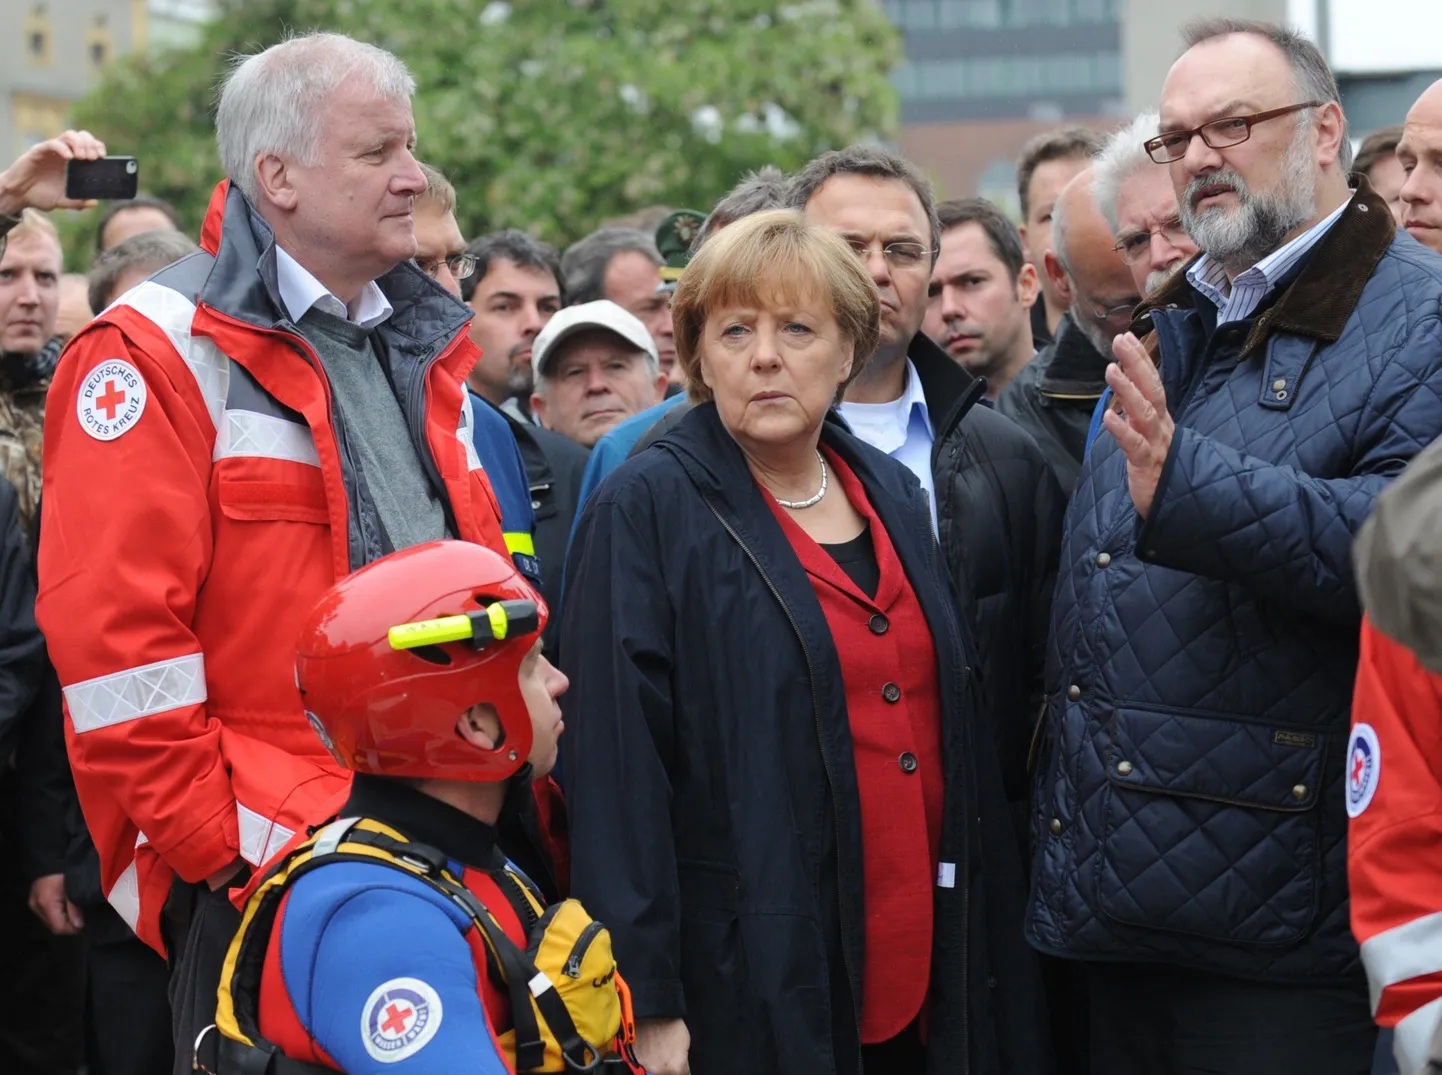 Saksamaa liidukantsler Angela Merkel (keskel), Baieri liidumaa juht Horst Seehofer (vasakul) Passau linnapäe Jürgen Dupper (paremal) täna üleujutatud Passau linnas.